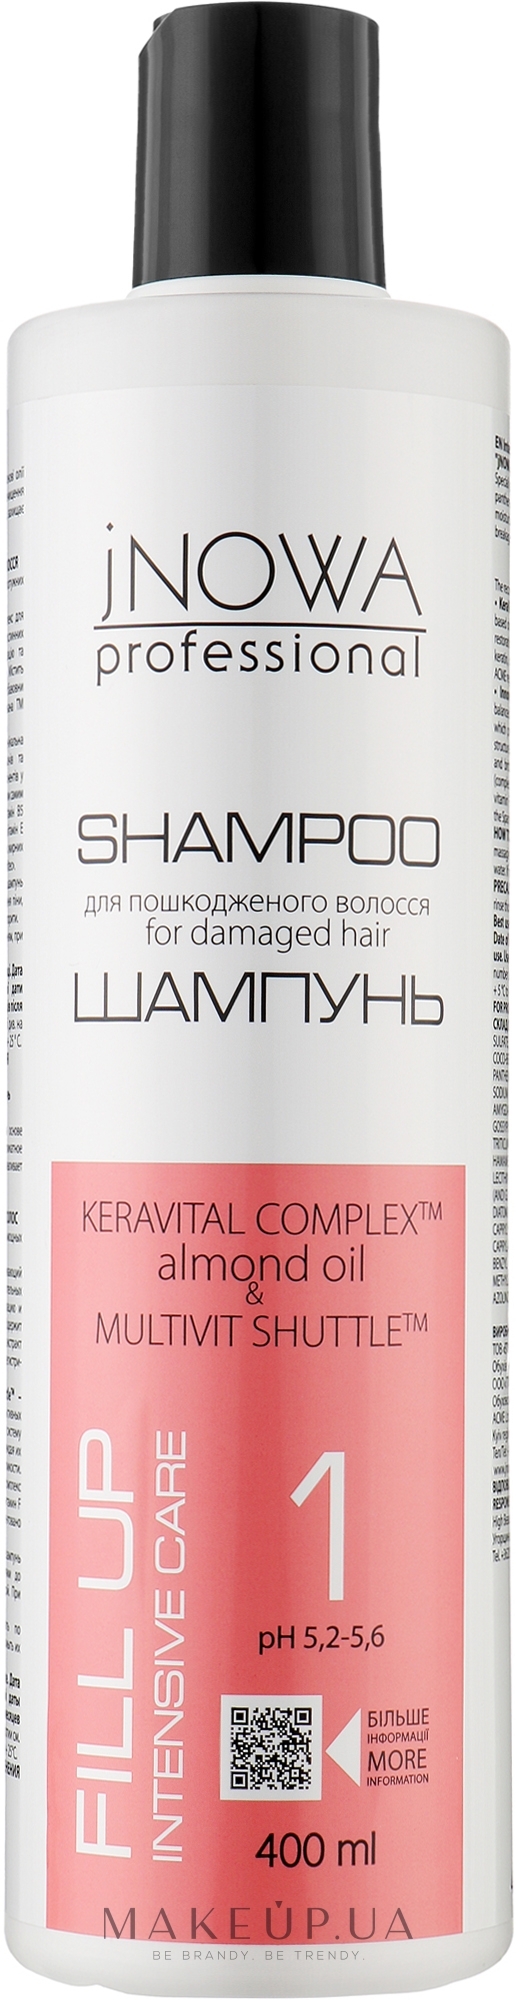 Інтенсивно відновлювальний шампунь - jNOWA Professional Fill Up Shampoo — фото 400ml